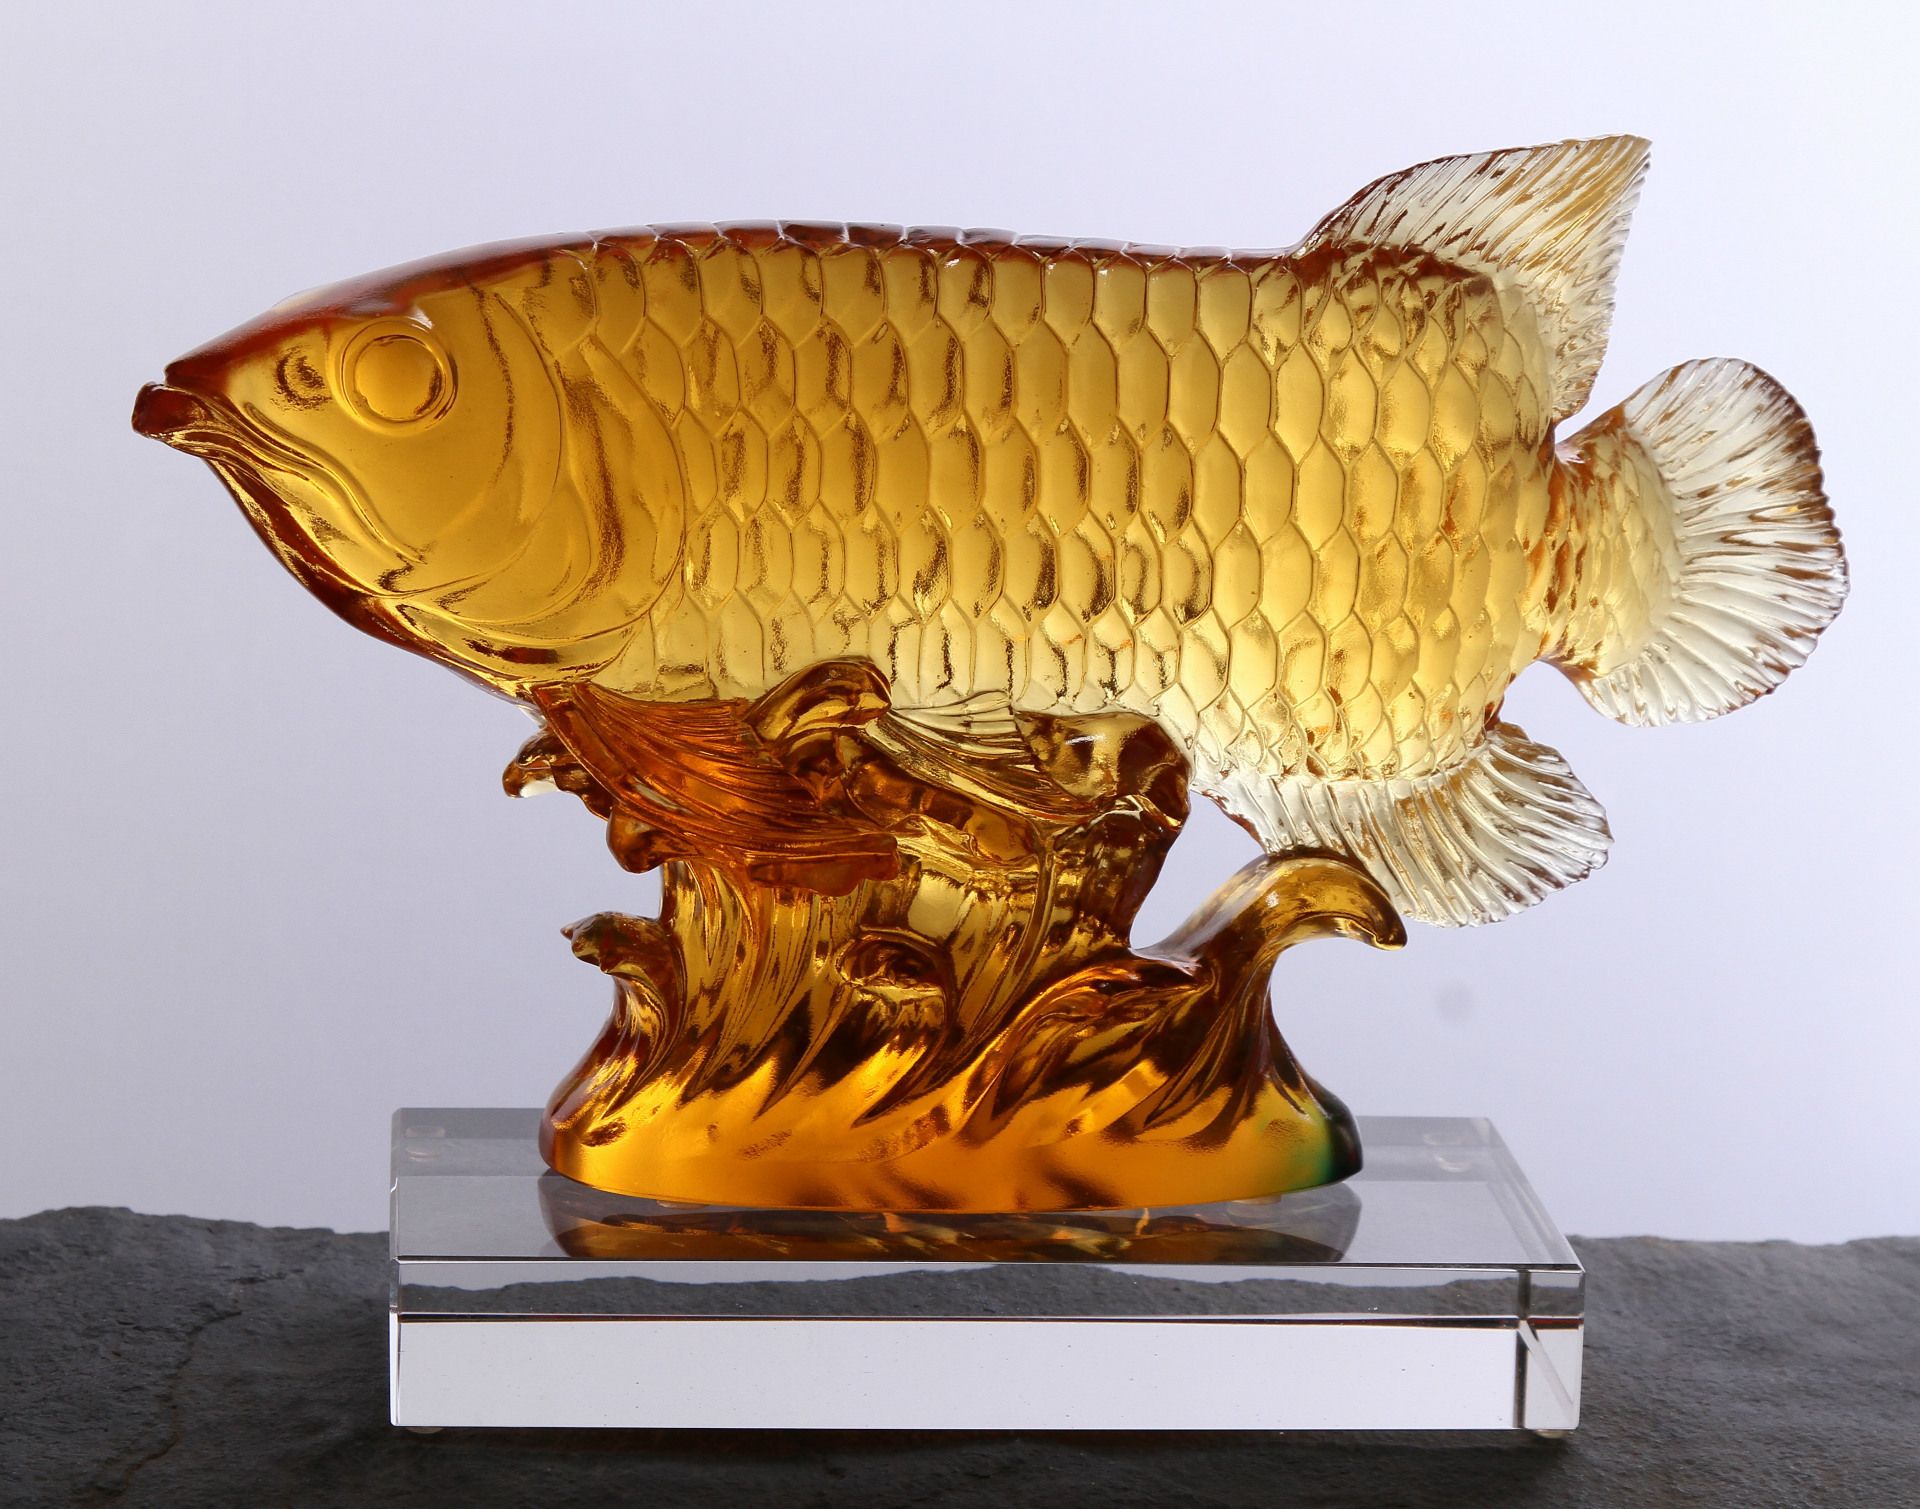 石雕金龙鱼摆件：石雕金龙鱼摆件是一种富有中国传统特色的工艺品